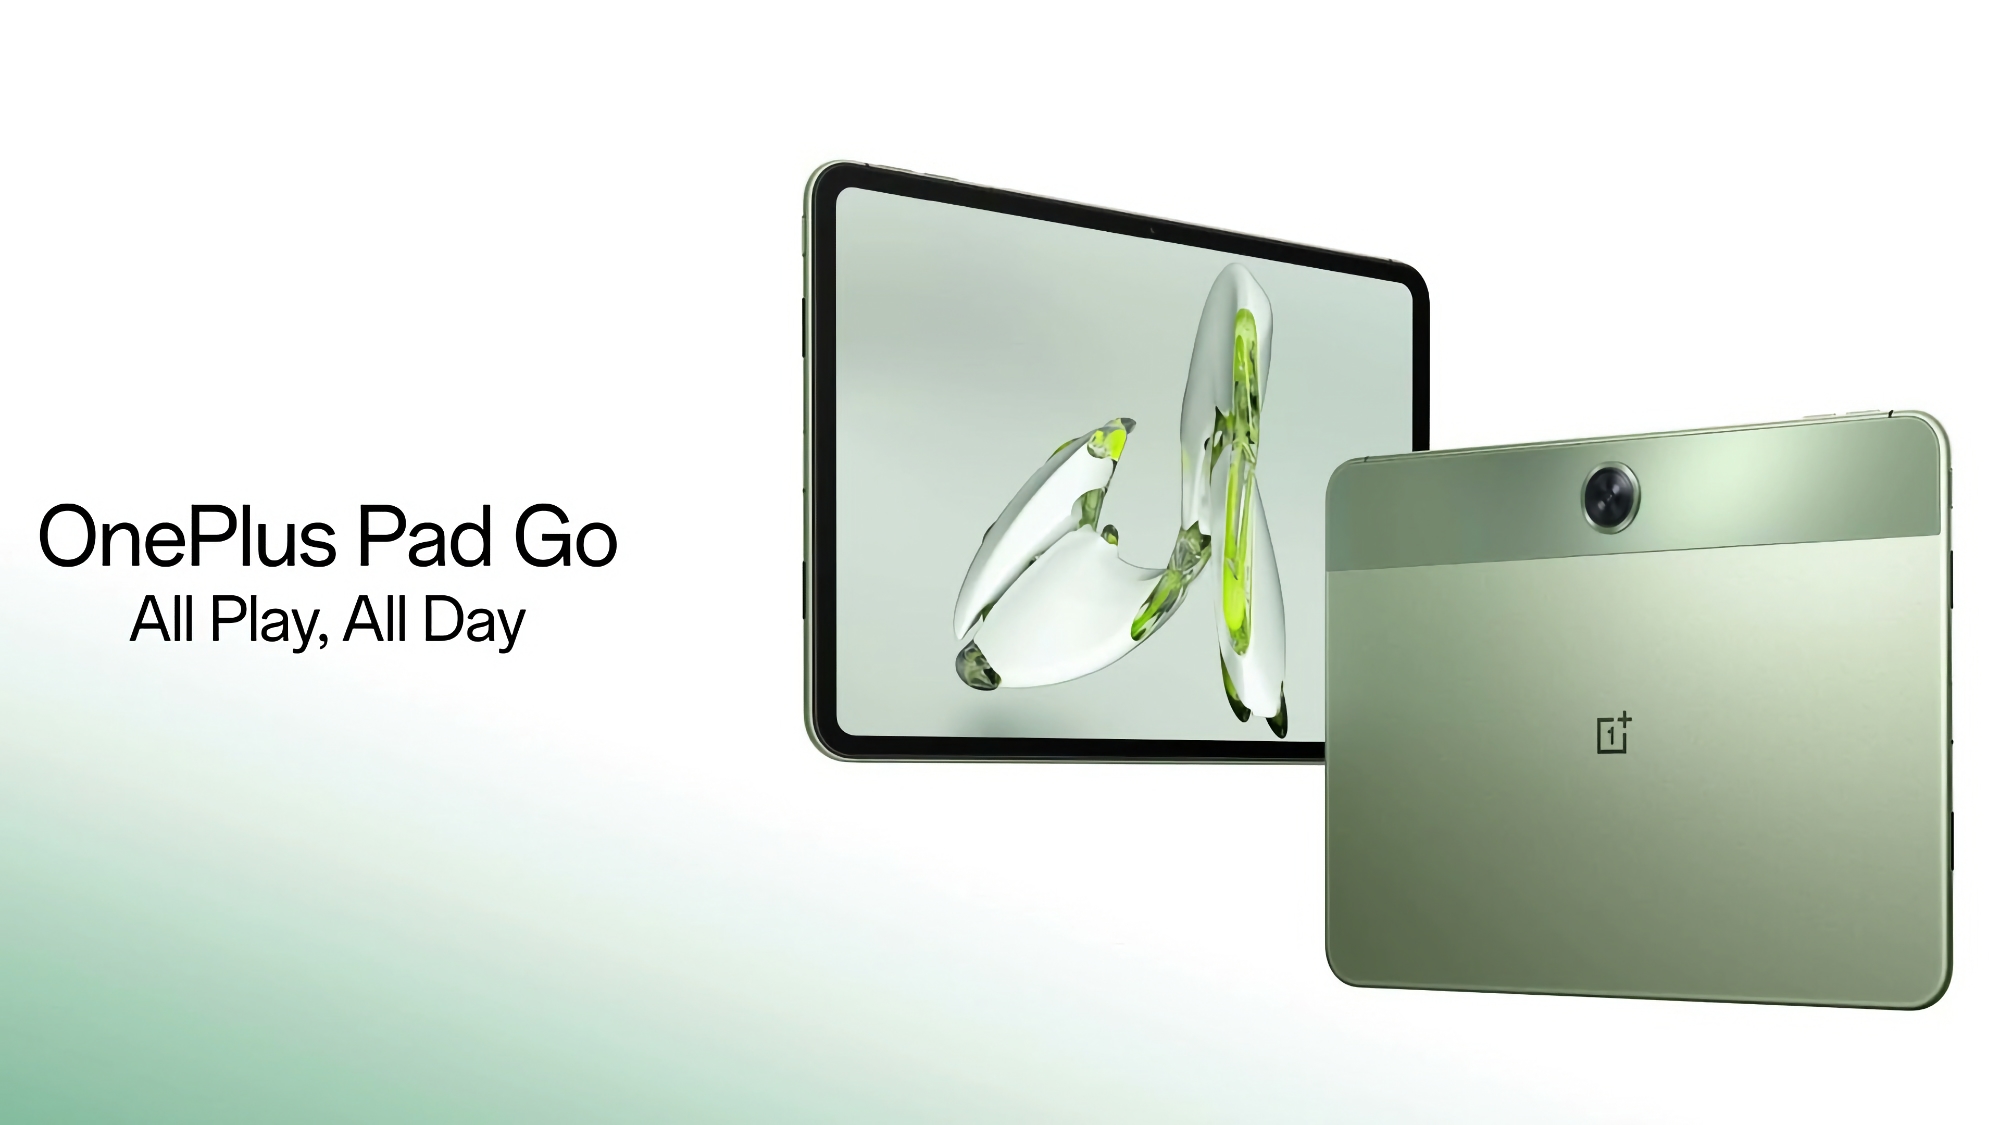 Le OnePlus Pad Go sera présenté en Europe le 23 avril.